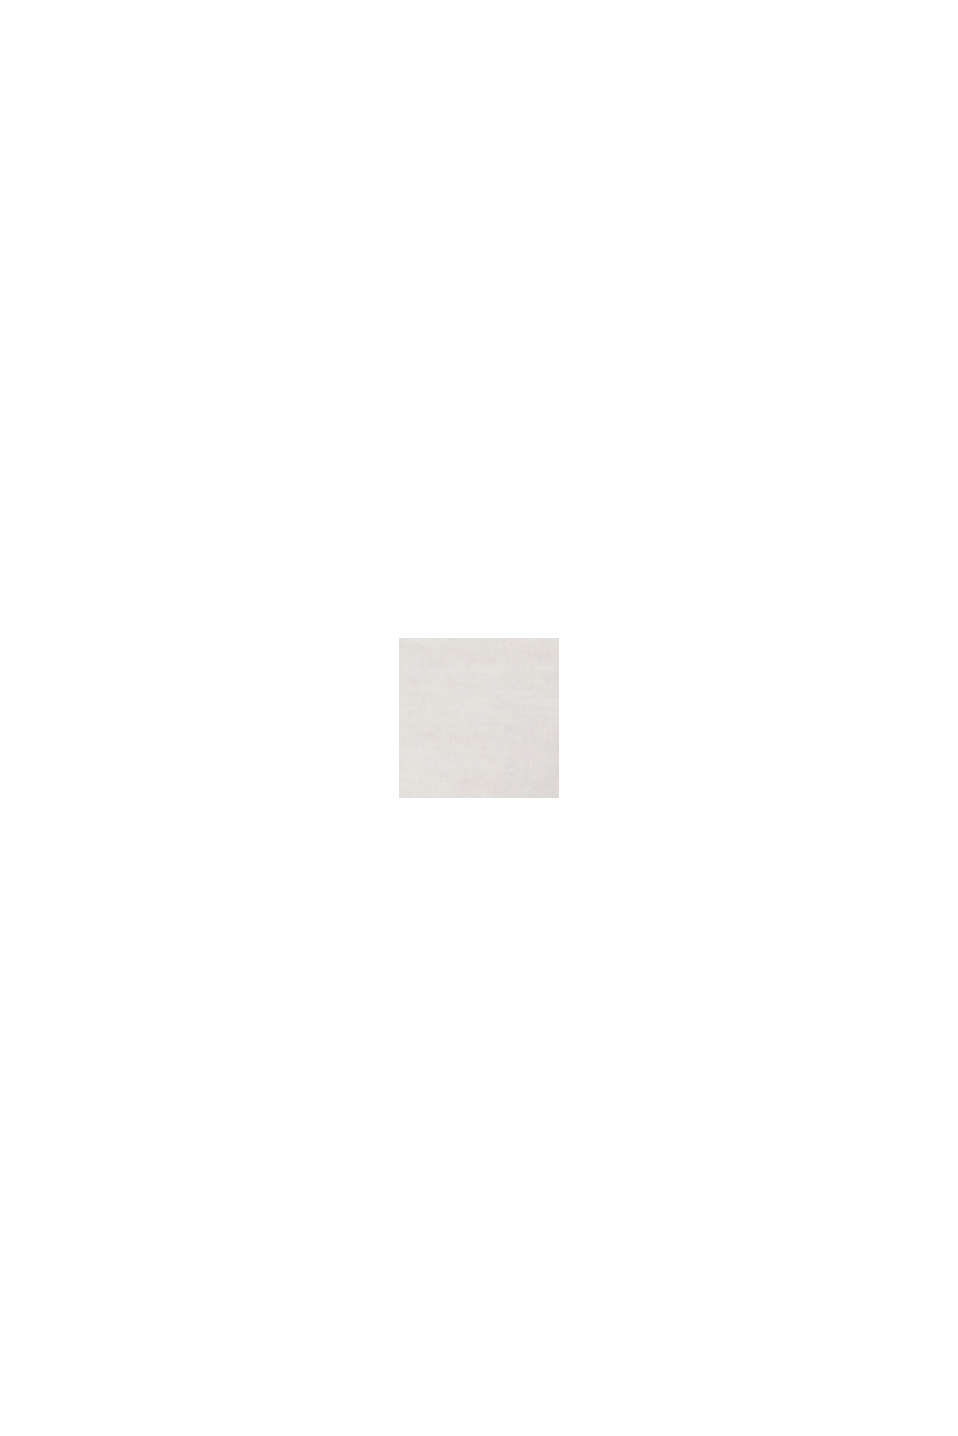 Maglia a manica lunga con ricami, 100% cotone, OFF WHITE, swatch